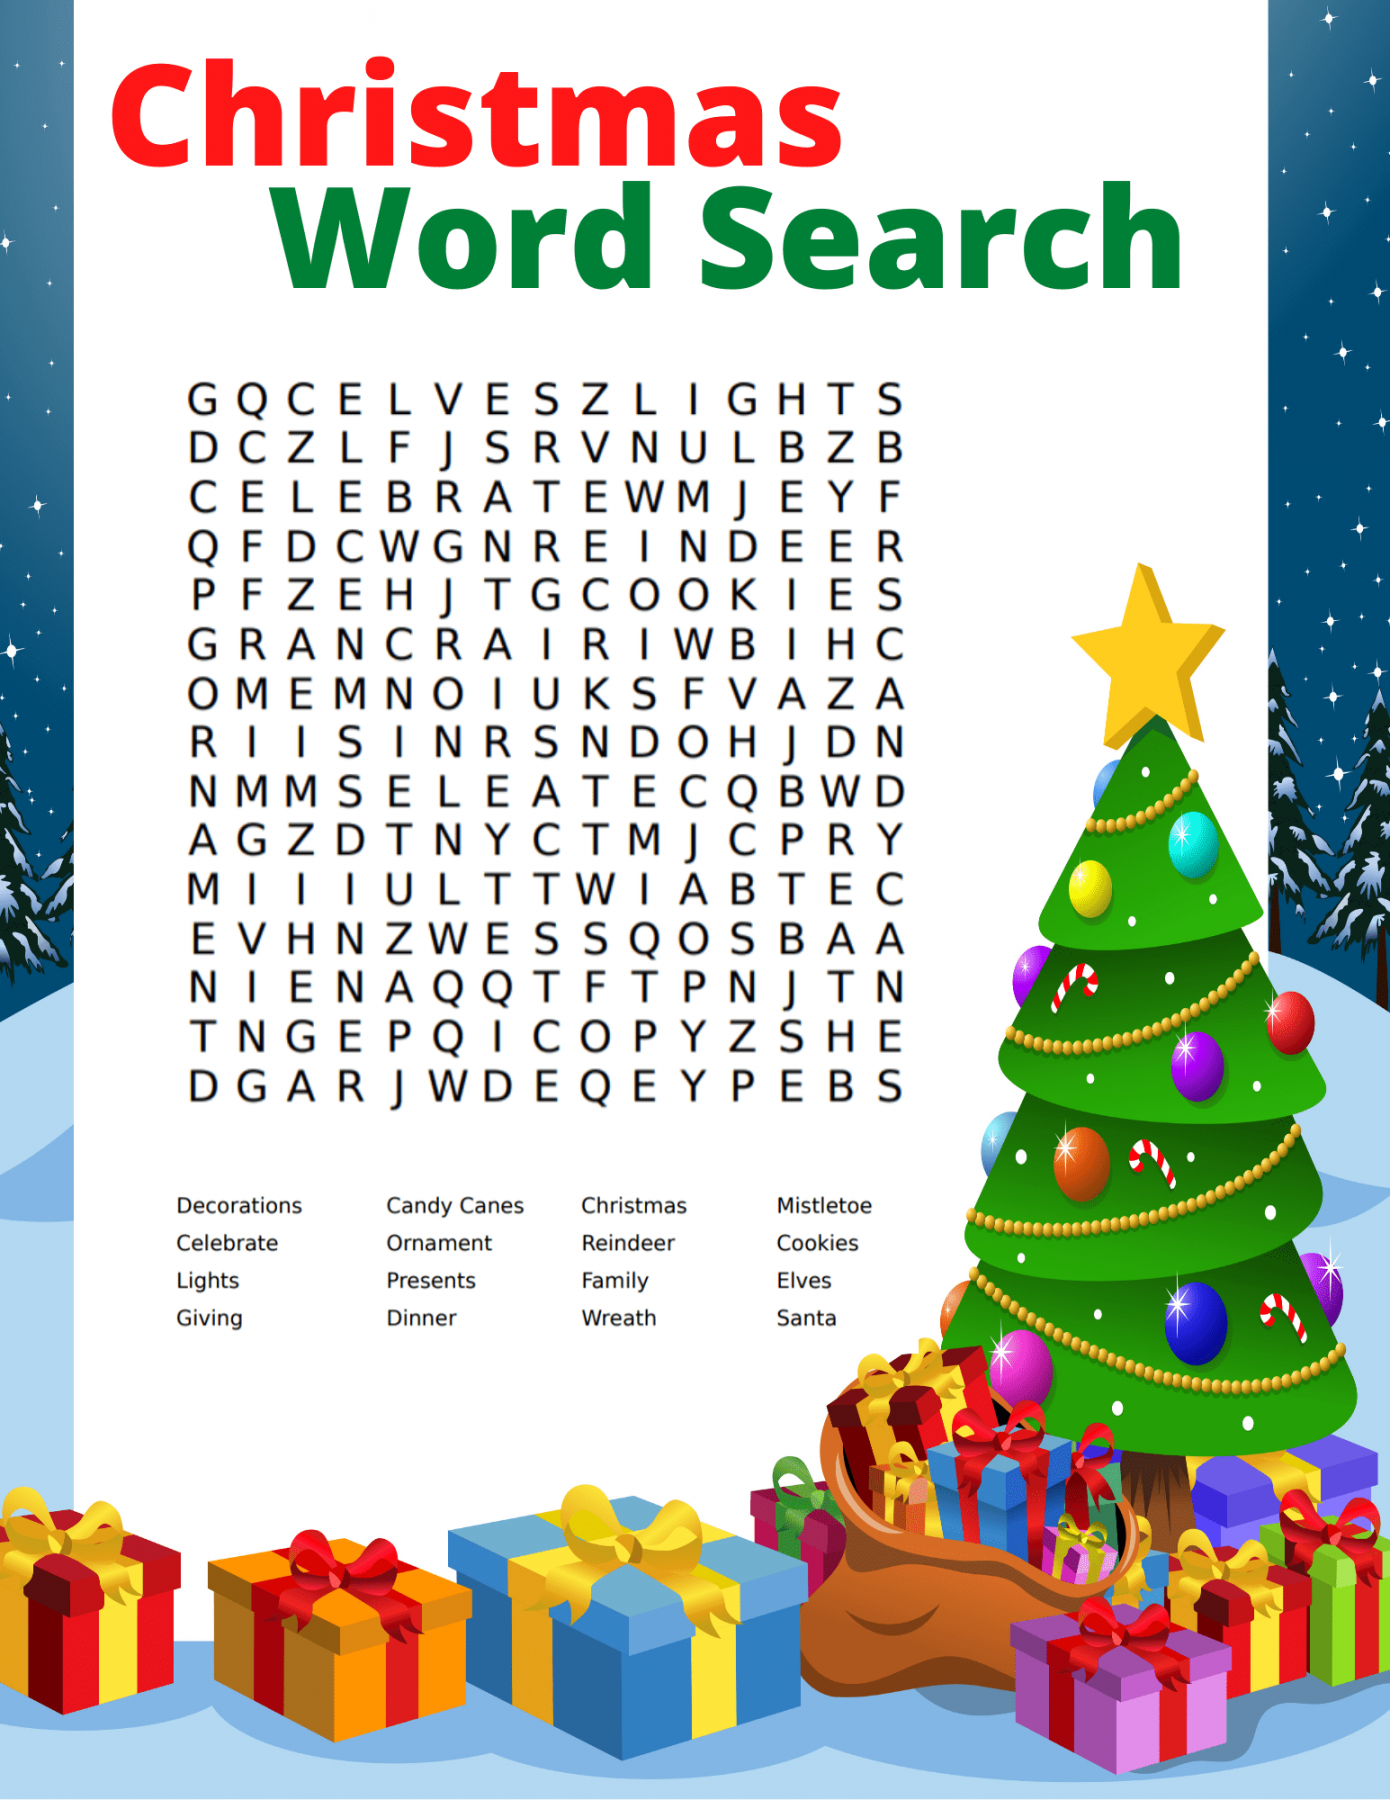 Free Printable Christmas Word Search - Printable - Free Christmas Word Search Printable for Kids and Adults